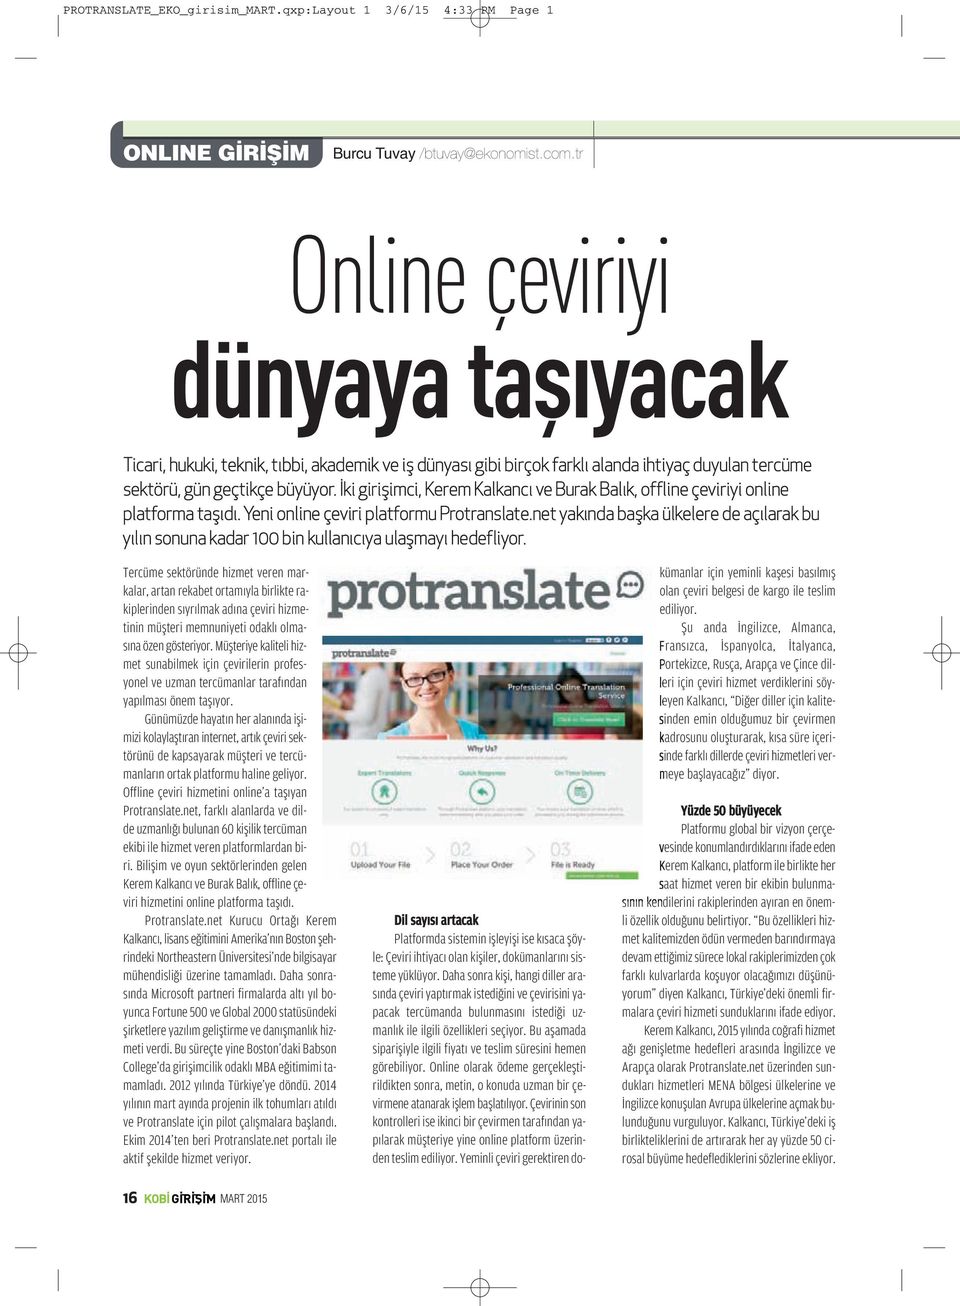 İki girişimci, Kerem Kalkancı ve Burak Balık, offline çeviriyi online platforma taşıdı. Yeni online çeviri platformu Protranslate.